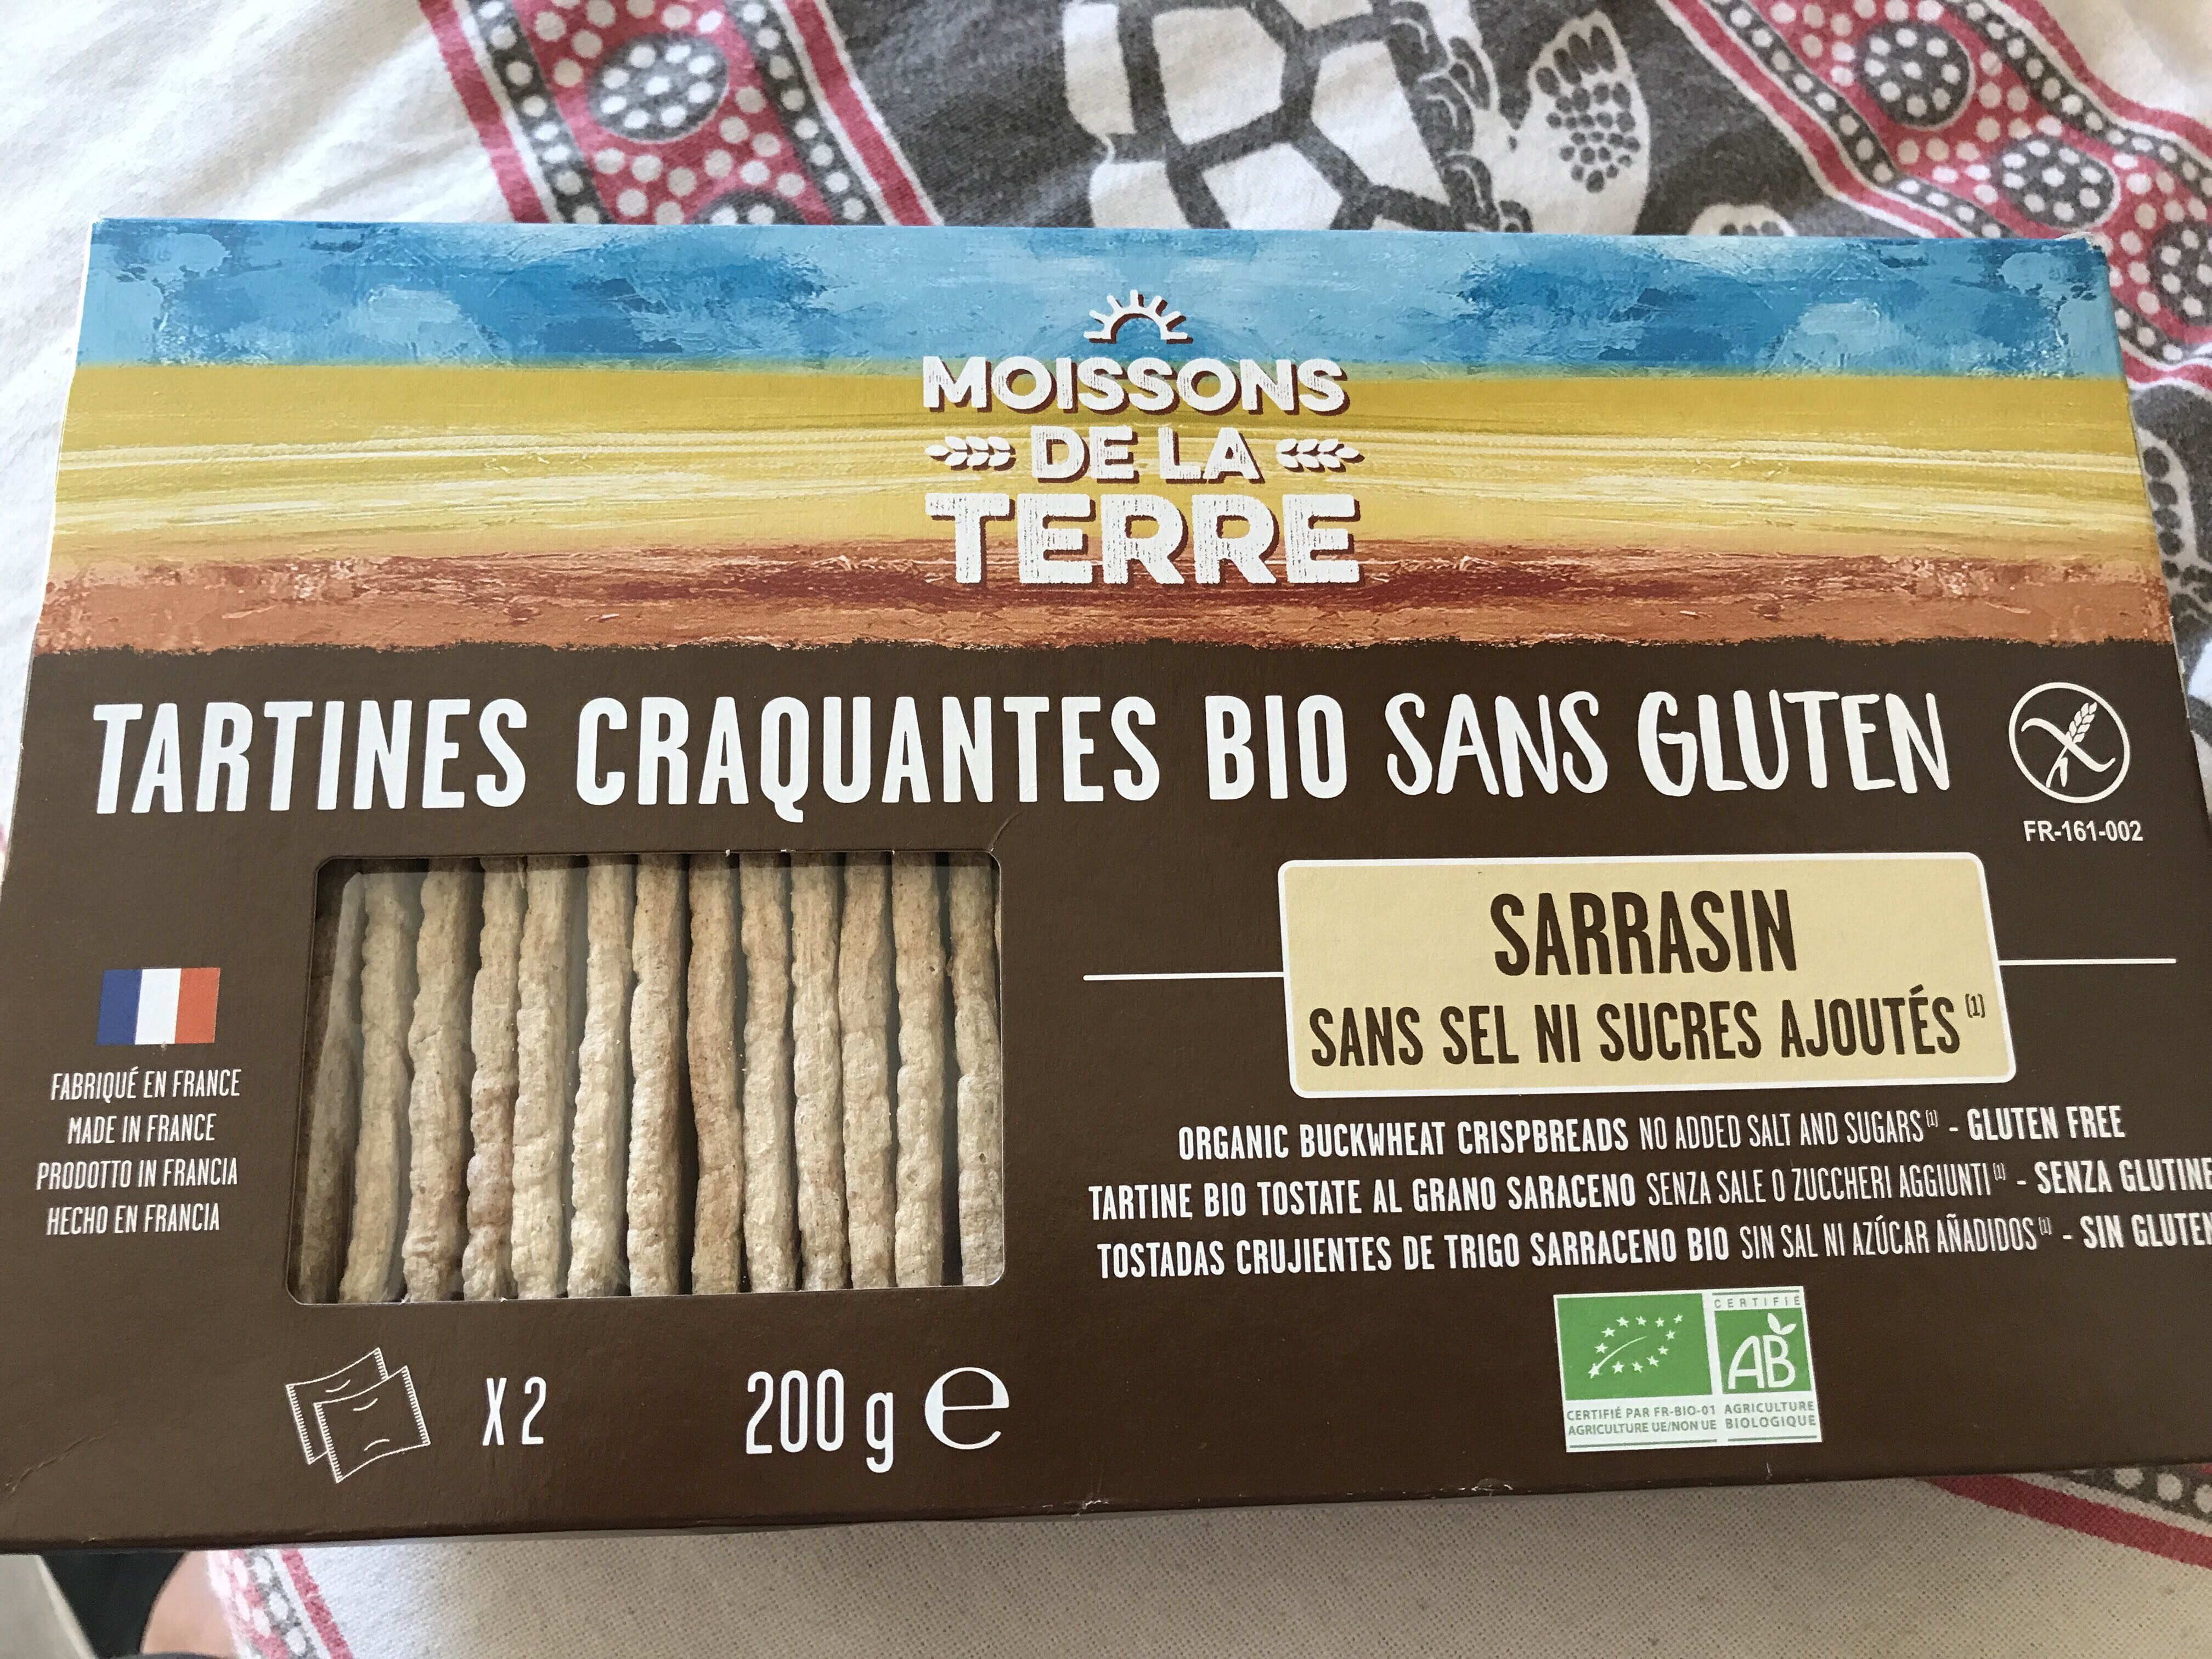 Tartines craquantes Sarrasin - Ingrediënten - fr